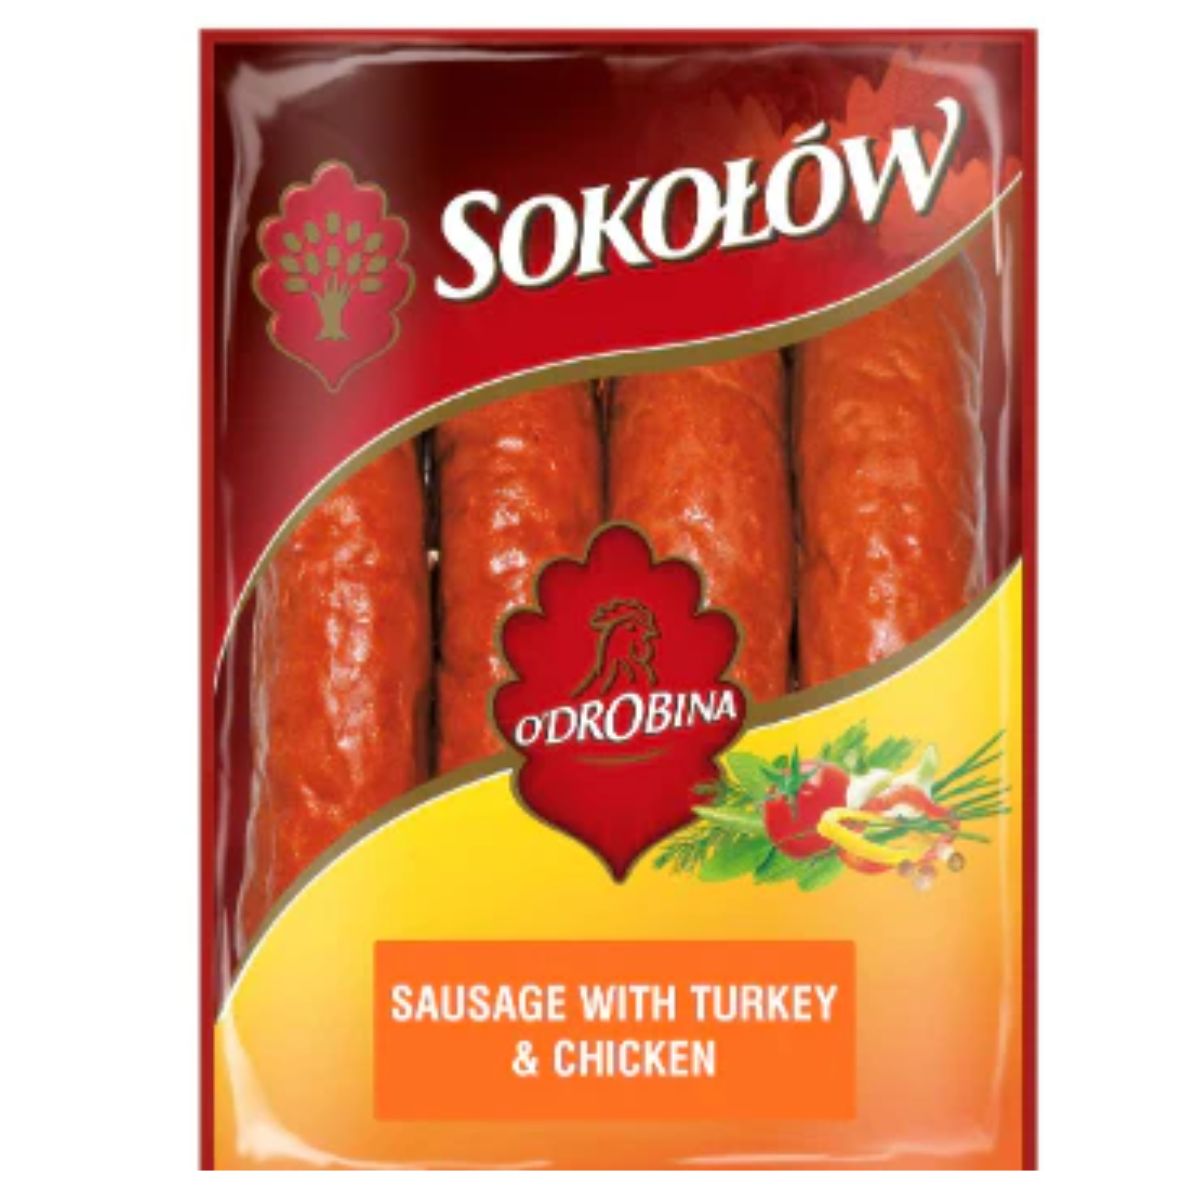 Sokolow - Sausage with Turkey & Chicken - 1.089kg (Varies)